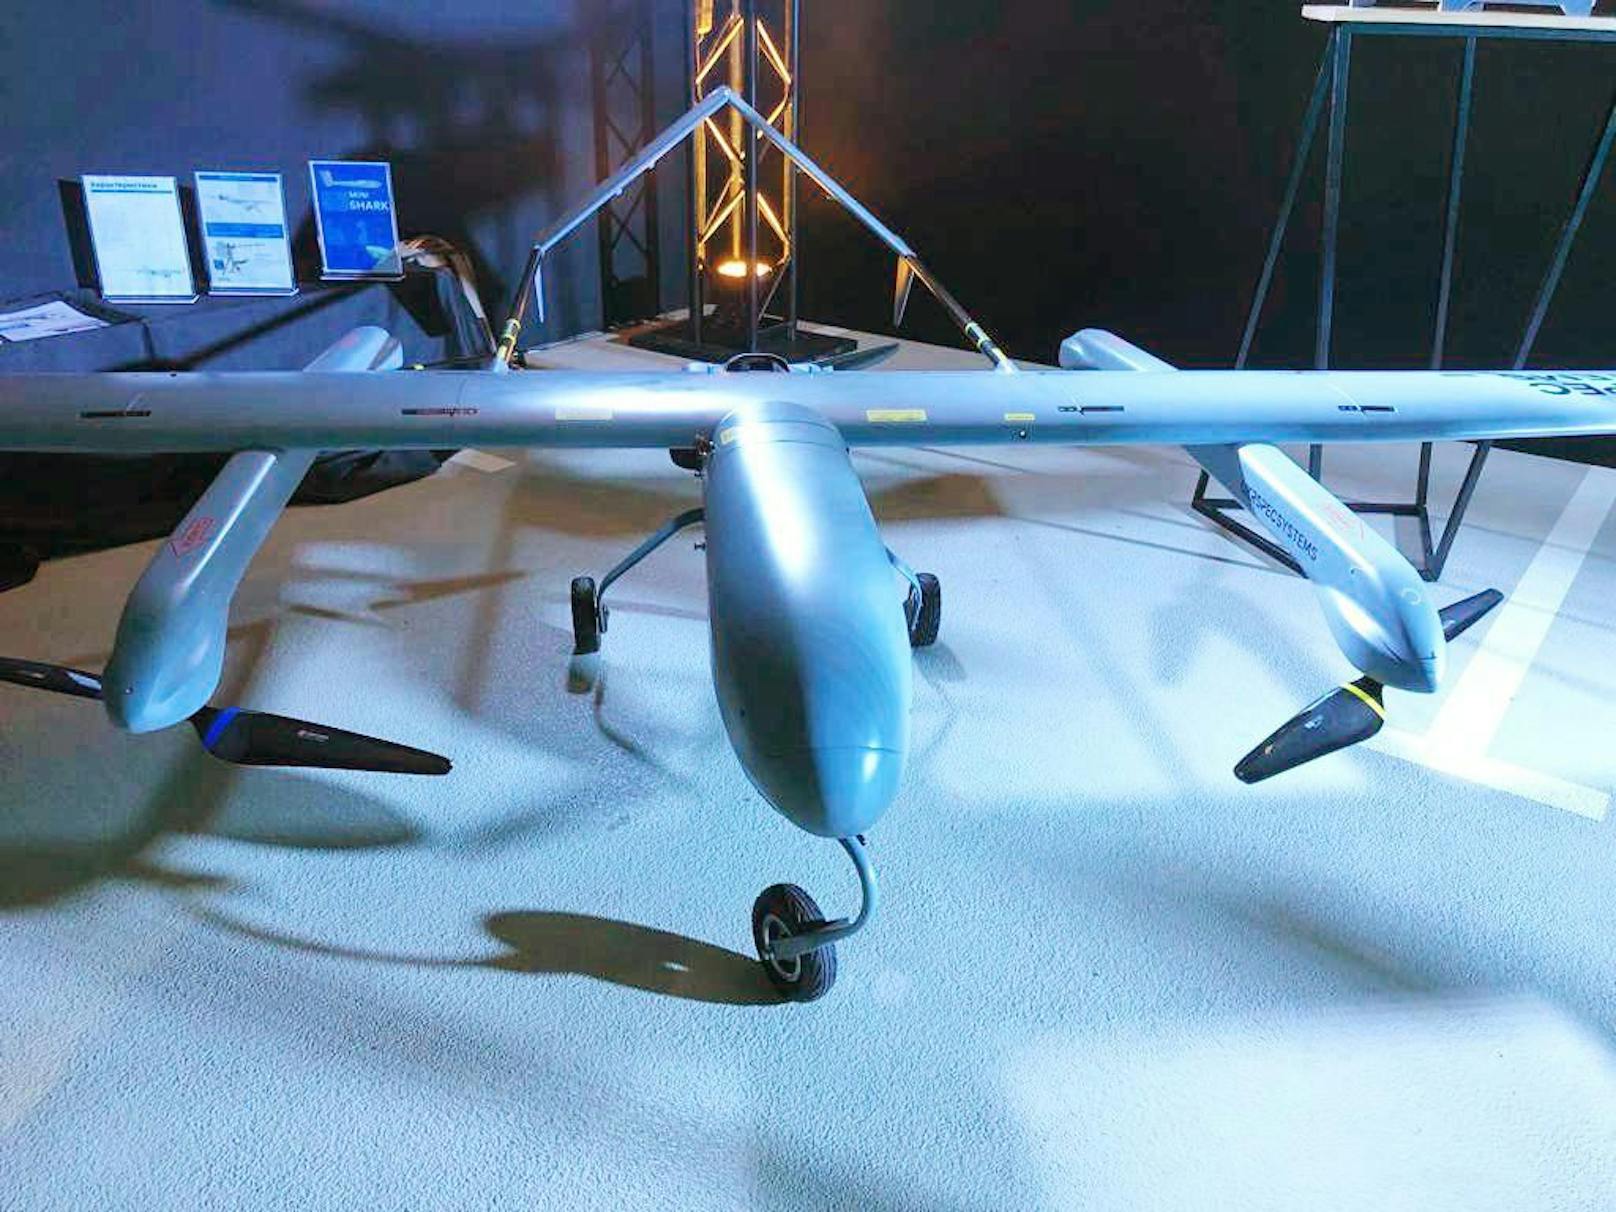 Vom Unternehmen UkrSpecSystems stammt auch diese Drohne, die sowohl als Aufklärungs- als auch als Kampfdrohne eingesetzt werden kann.